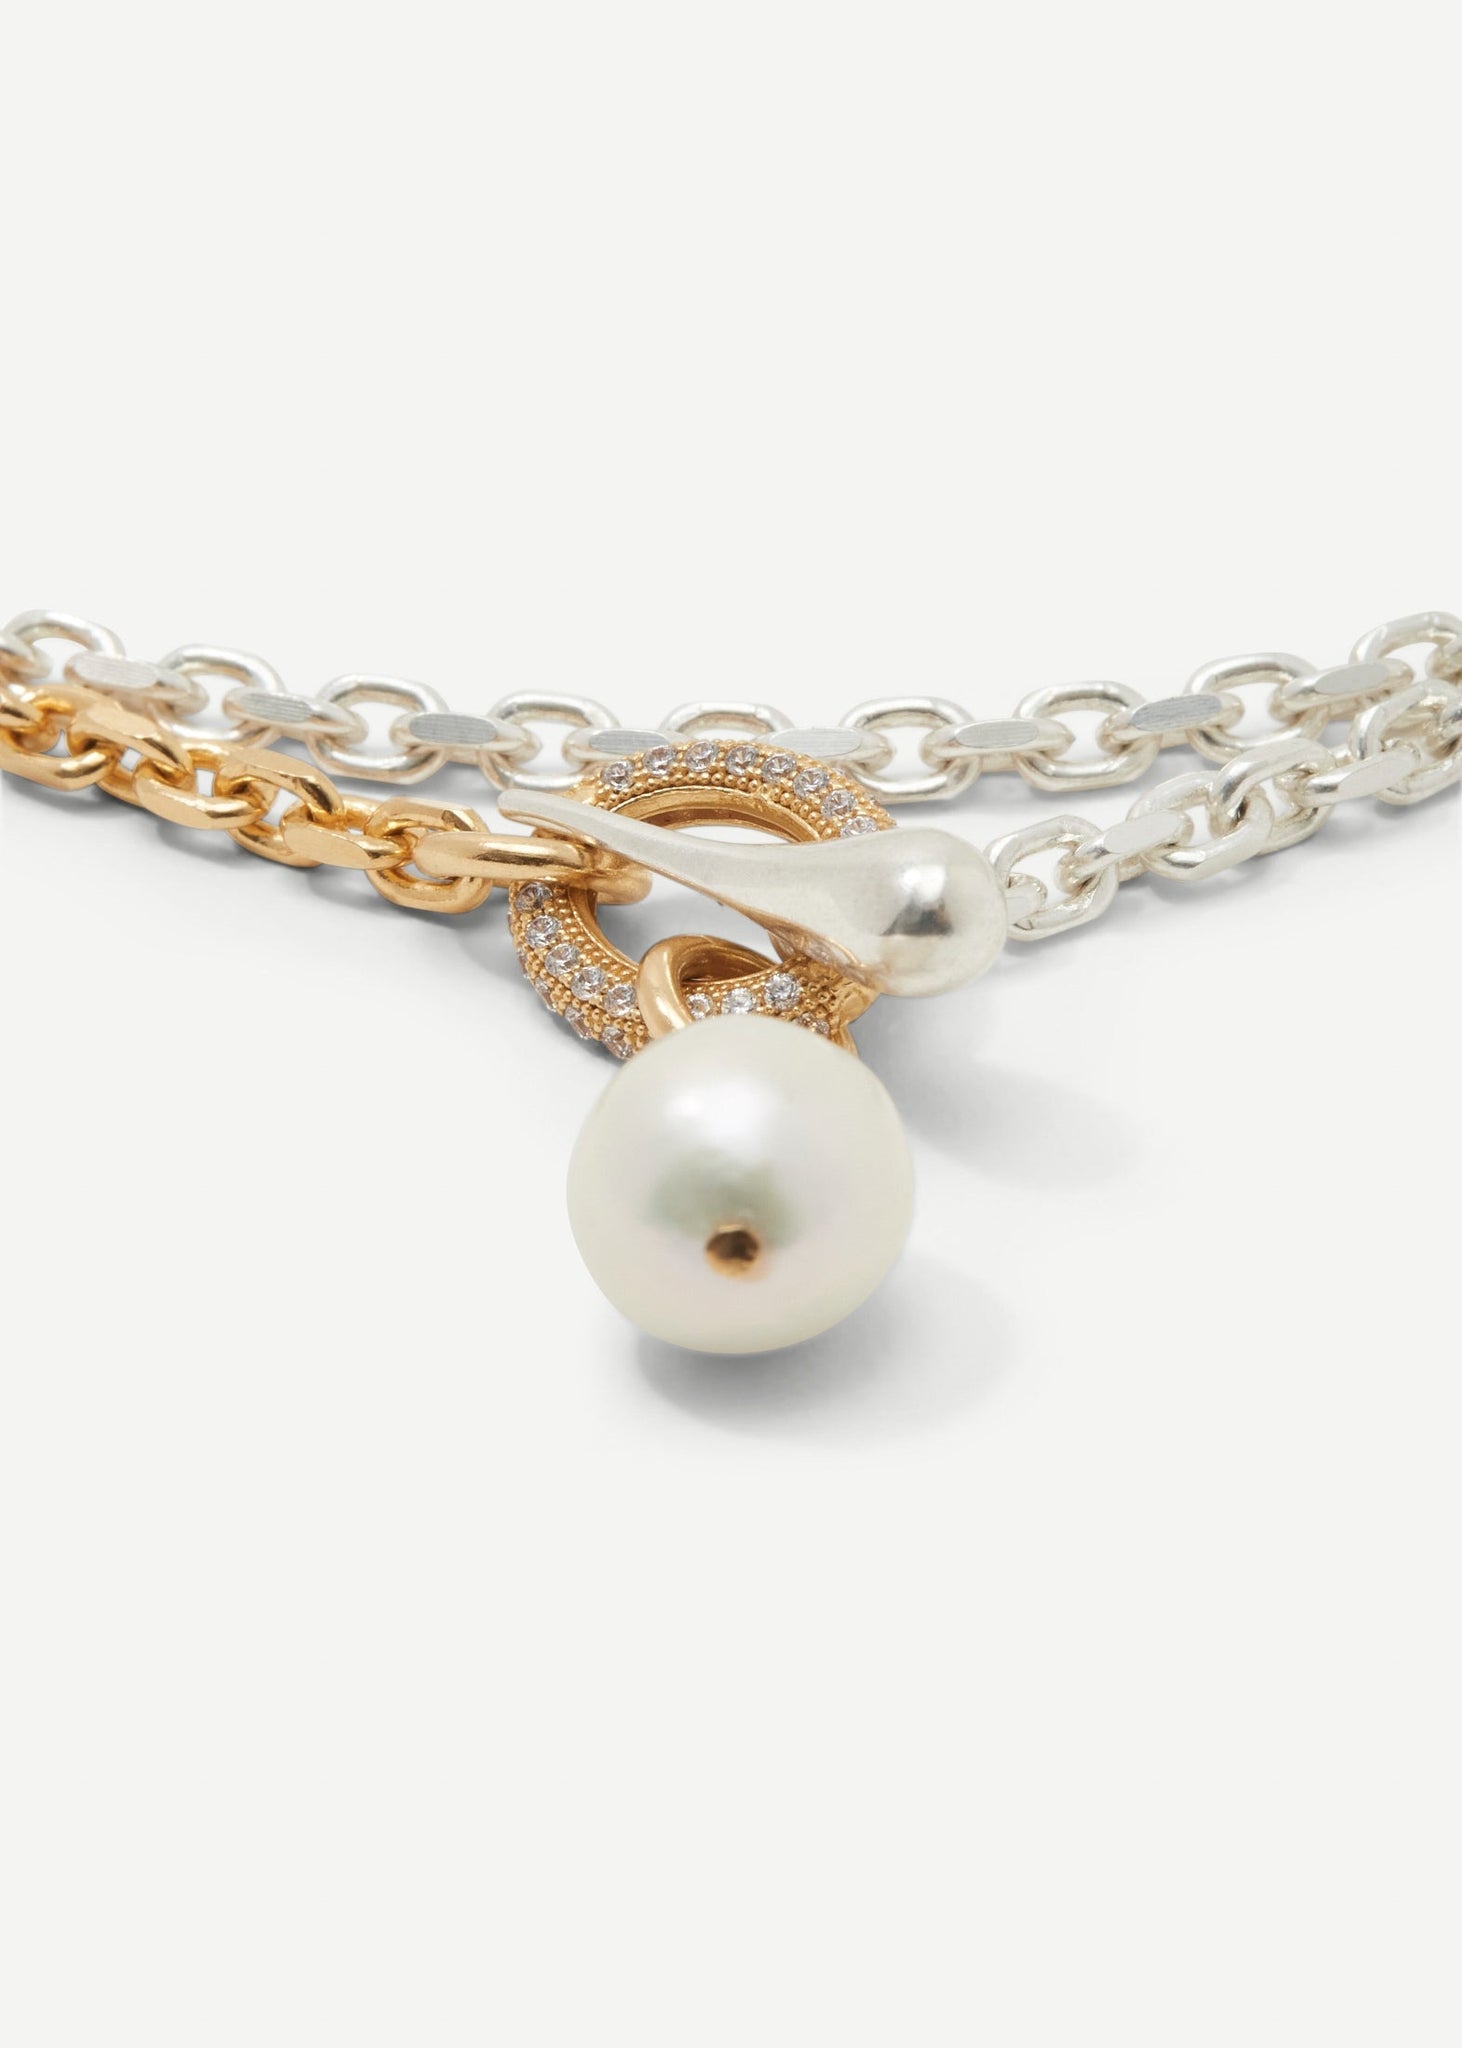 Stoned Lariat Necklace - Necklaces - Cornelia Webb - 2